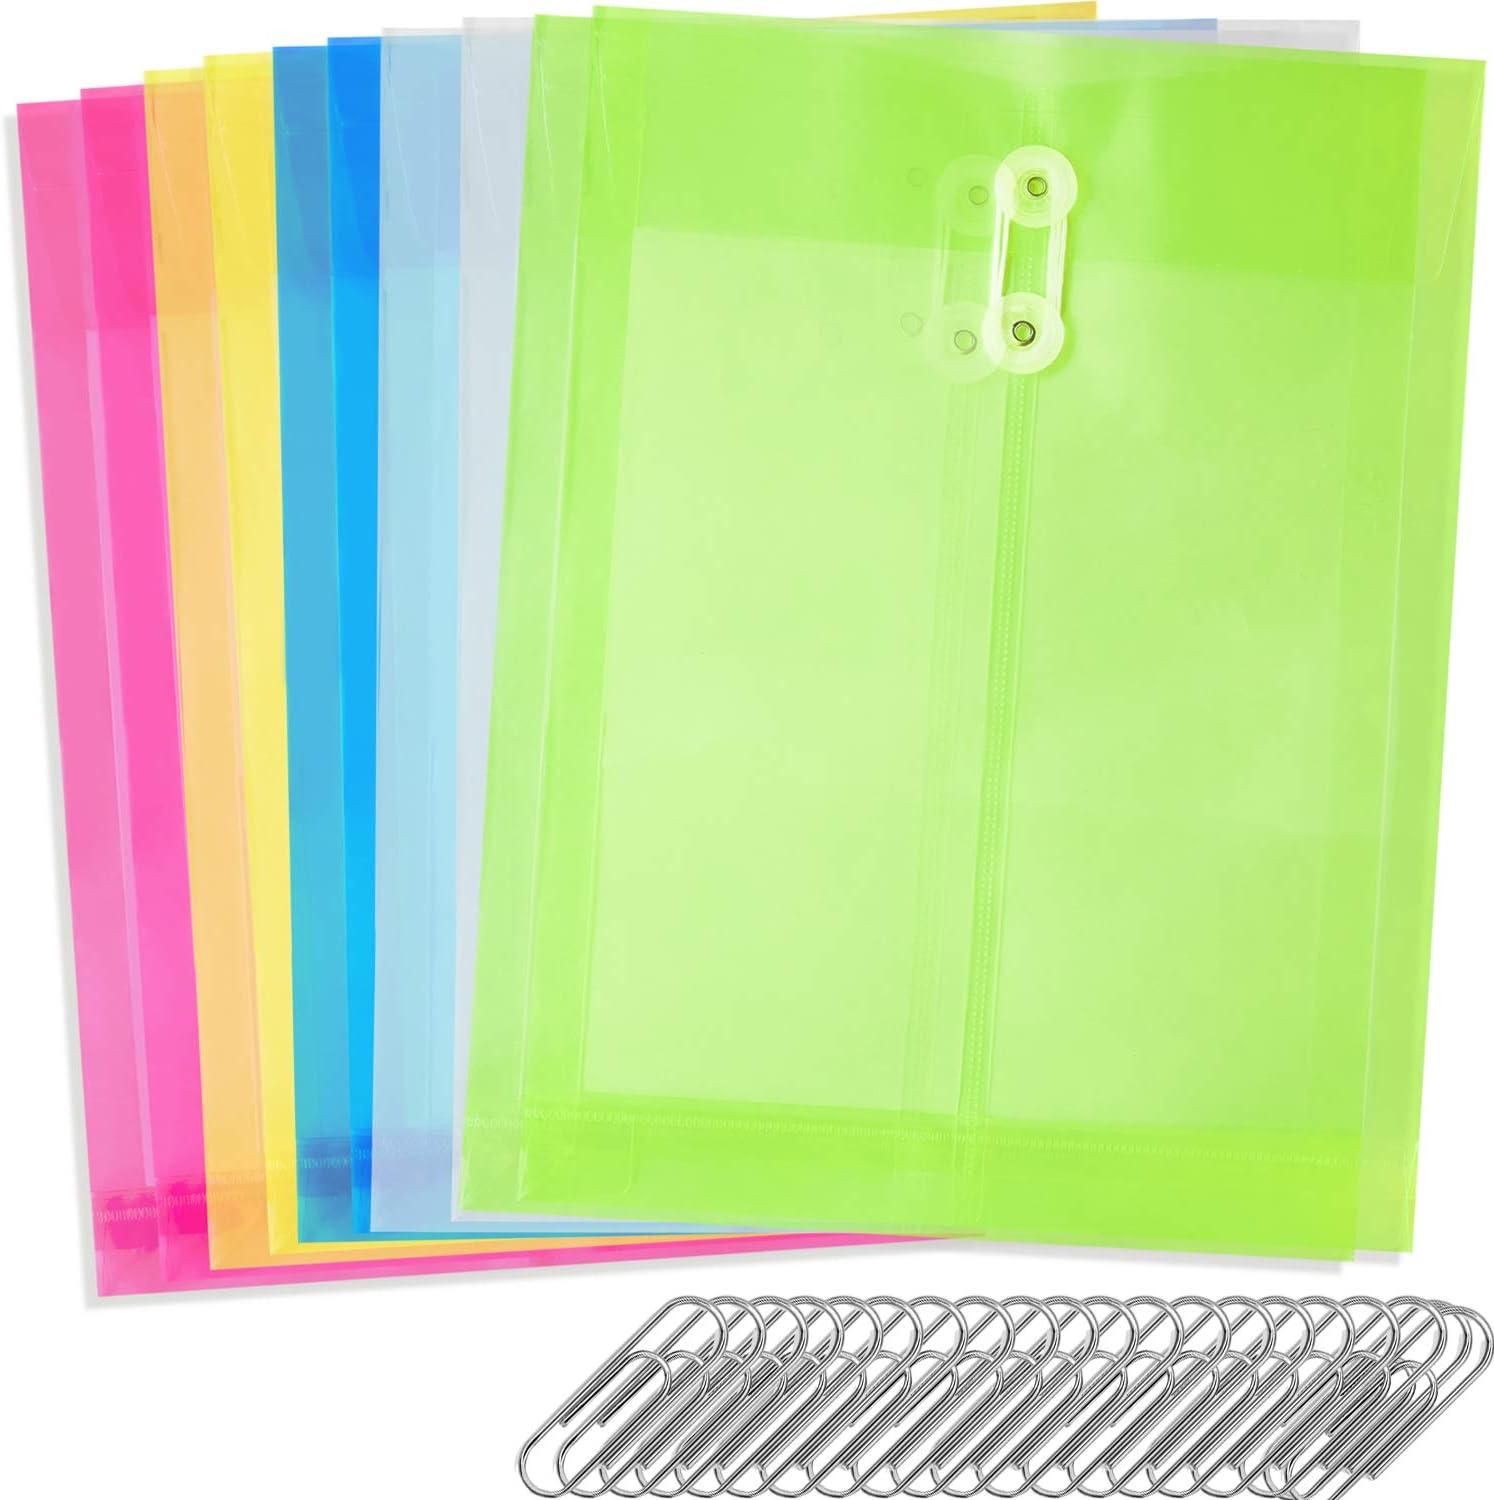 youowo 10 pcs plastic file folders transparent a4 paper size 20 pcs paper clip waterproof file envelopes for